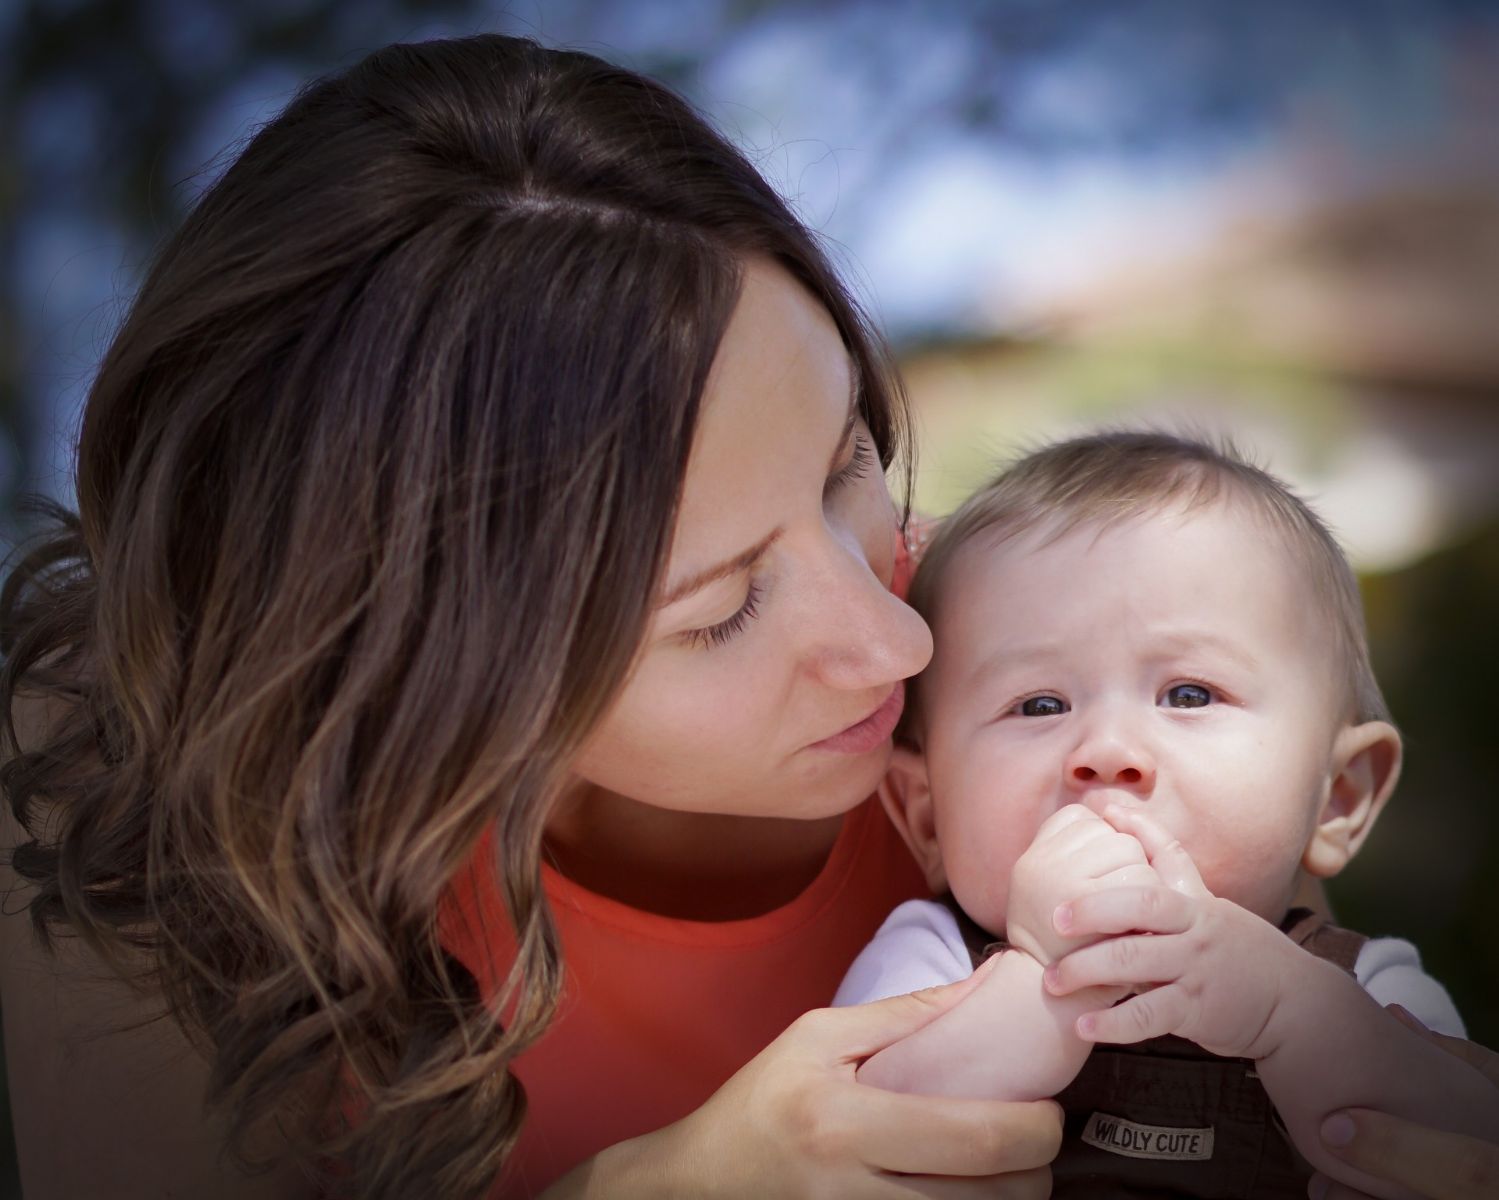 Odsávačky - spolehlivá opora pro maminky i miminka